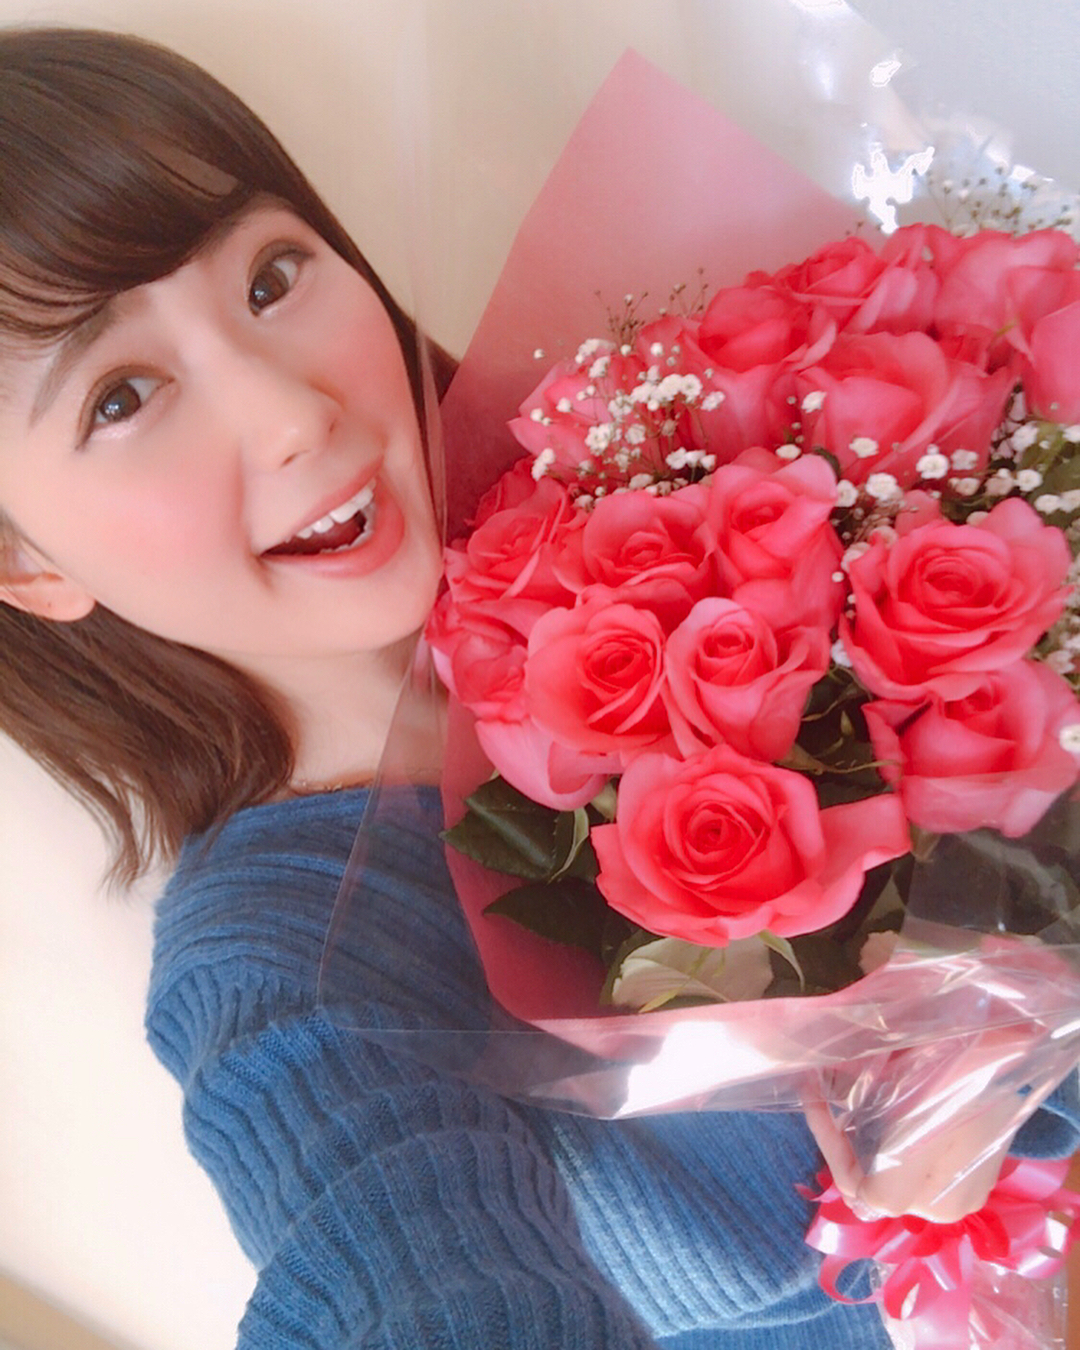 伊藤奈月 今日は My Birthday 21歳になりました 誕生日になった瞬間の 0時に 21本のバラの花束を もらったよ びっくり Line Moe Zine